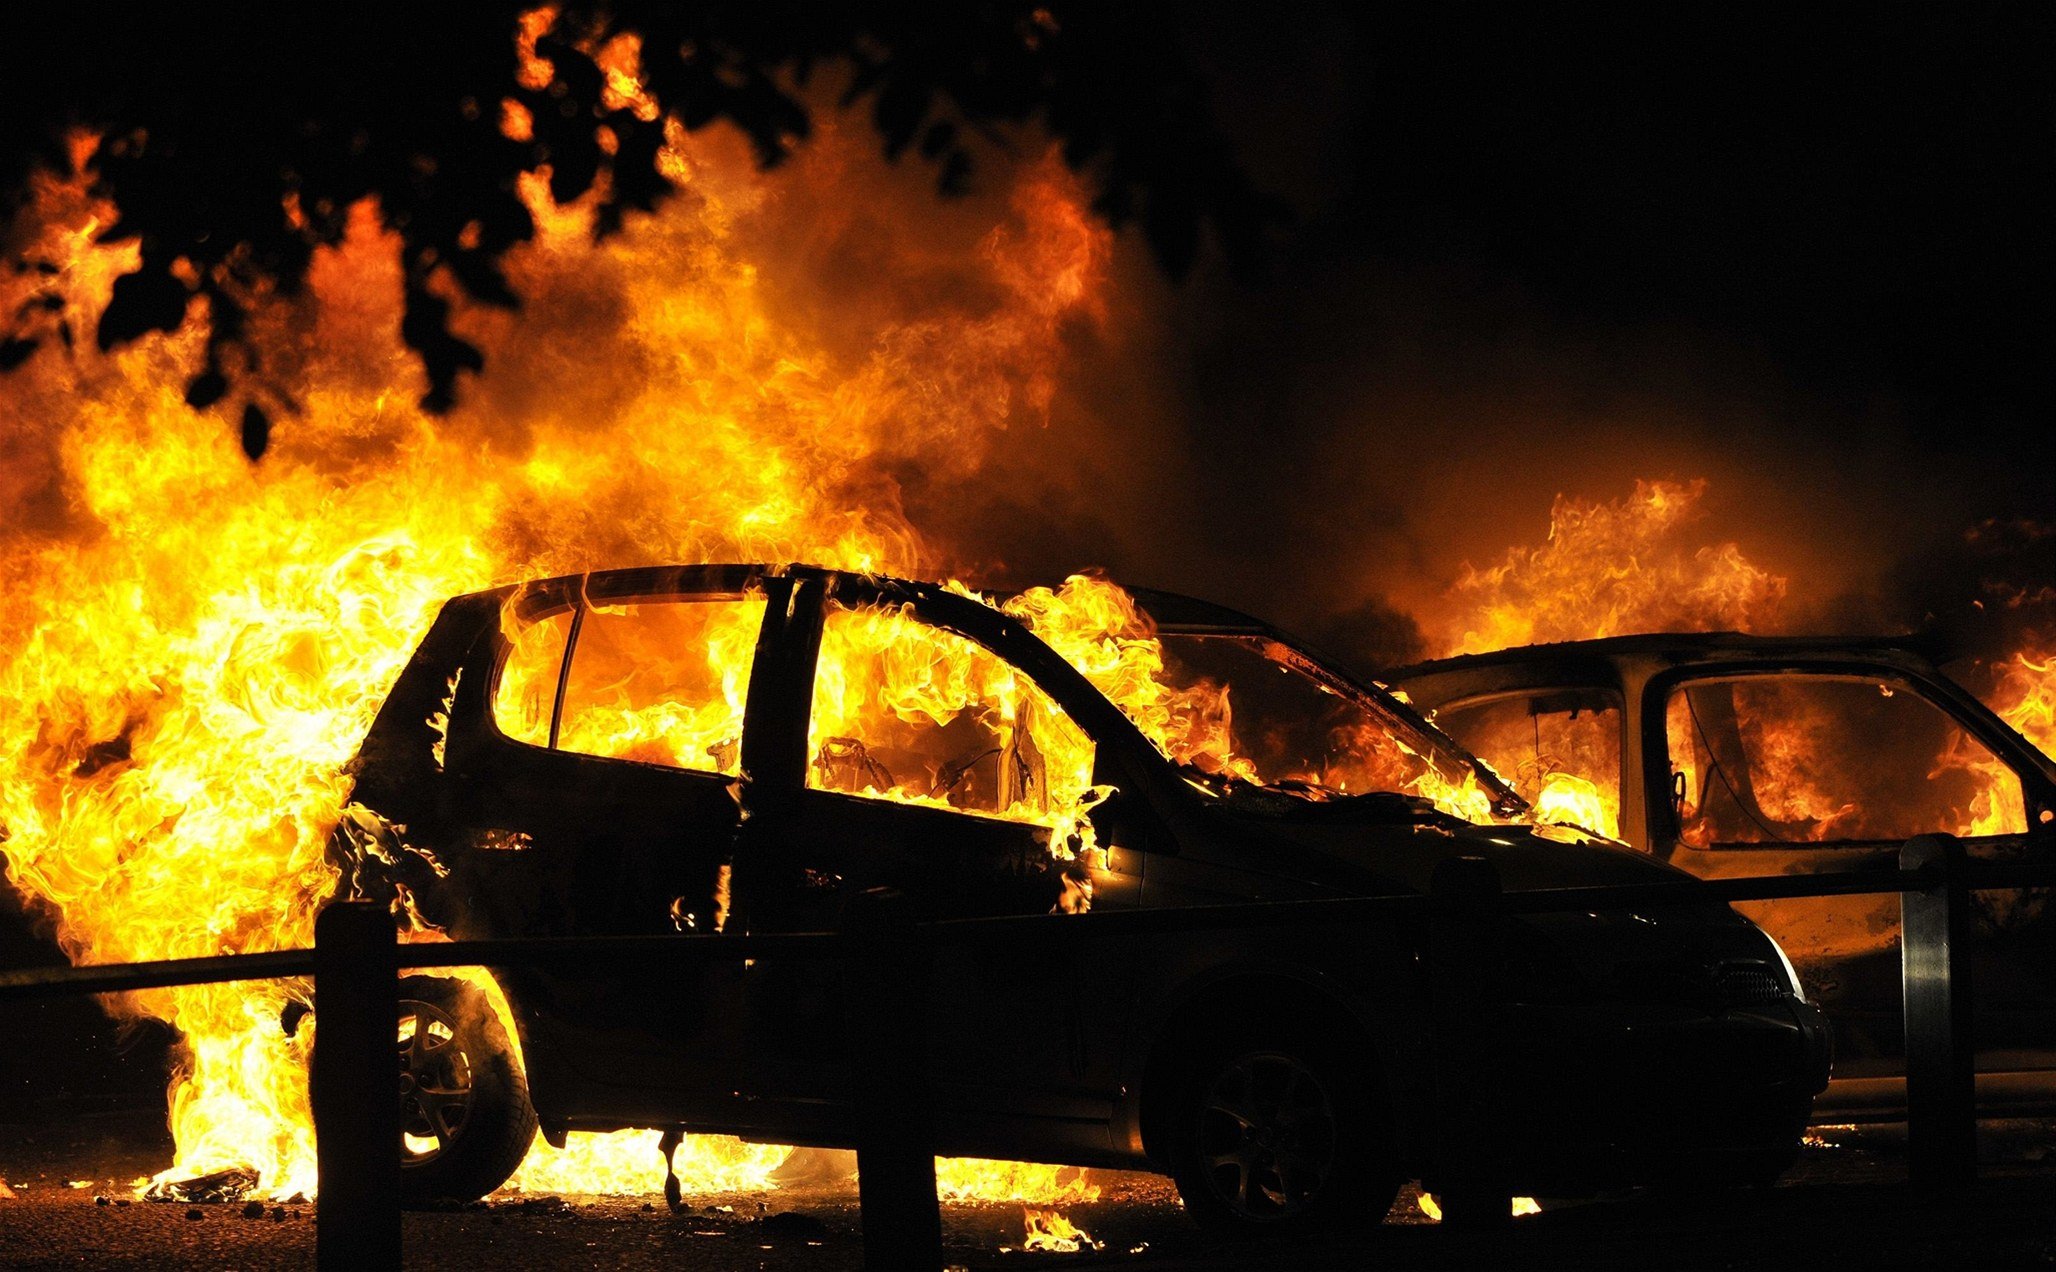 Сьогодні близько 2-ї години ночі в с.Кінчеш Ужгородського району загорівся моторний відсік автомобіля «Фольксваген Пассат» на словацьких номерах. 